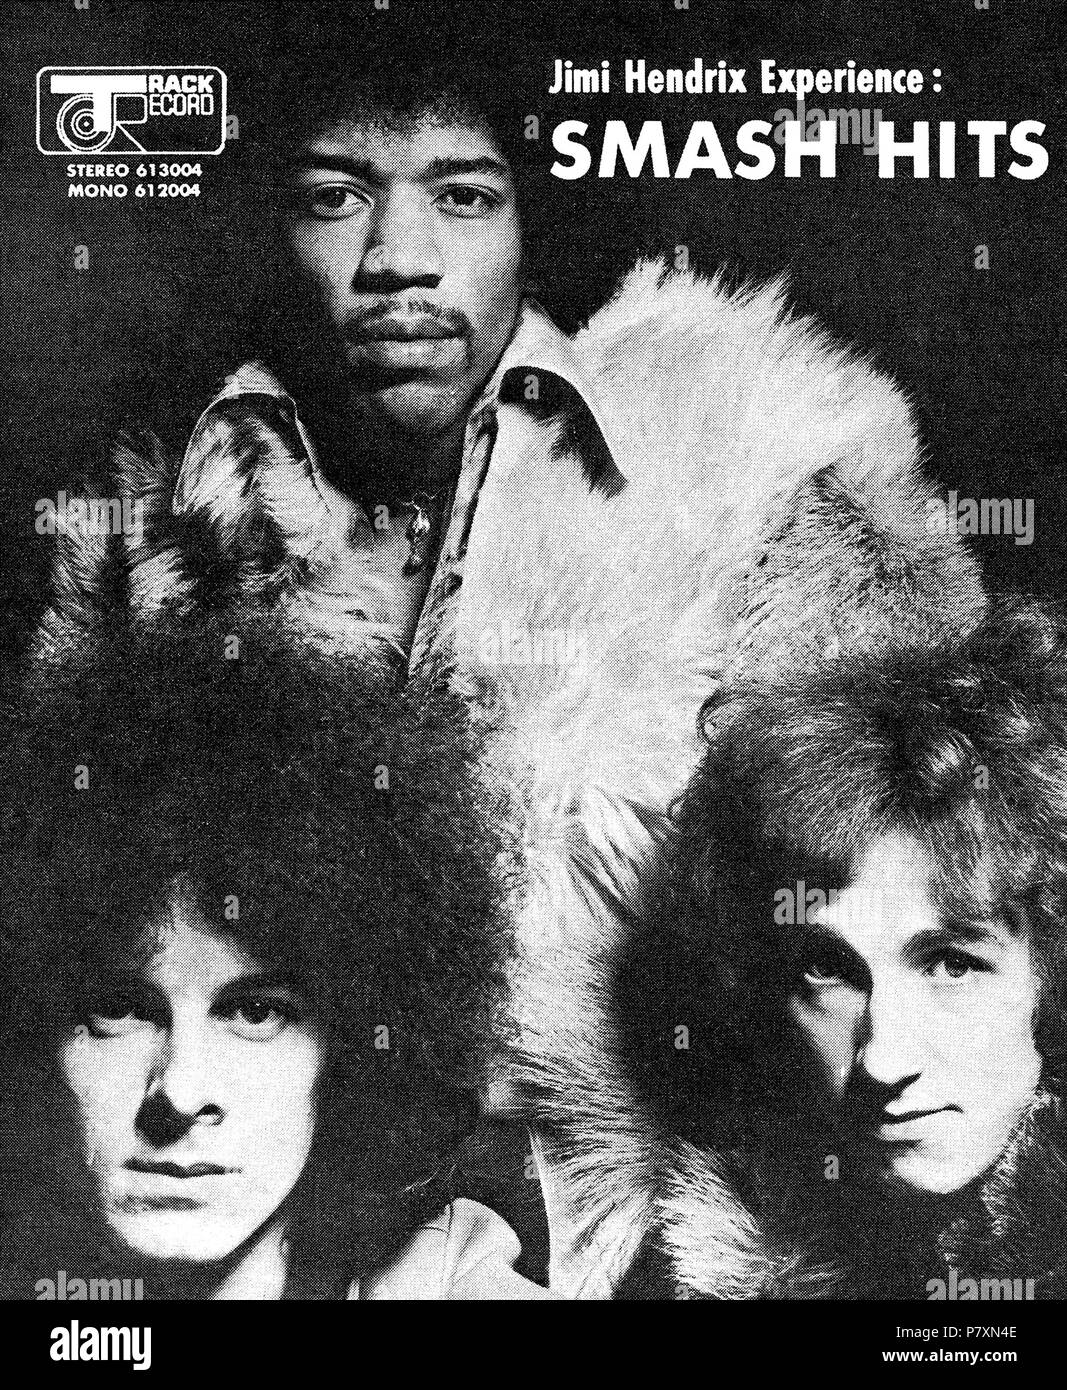 1968 britischen Werbung für das Album Smash Hits von der Jimi Hendrix Experience auf Track Records, Jimi Hendrix, Noel Redding und Mitch Mitchell. Stockfoto